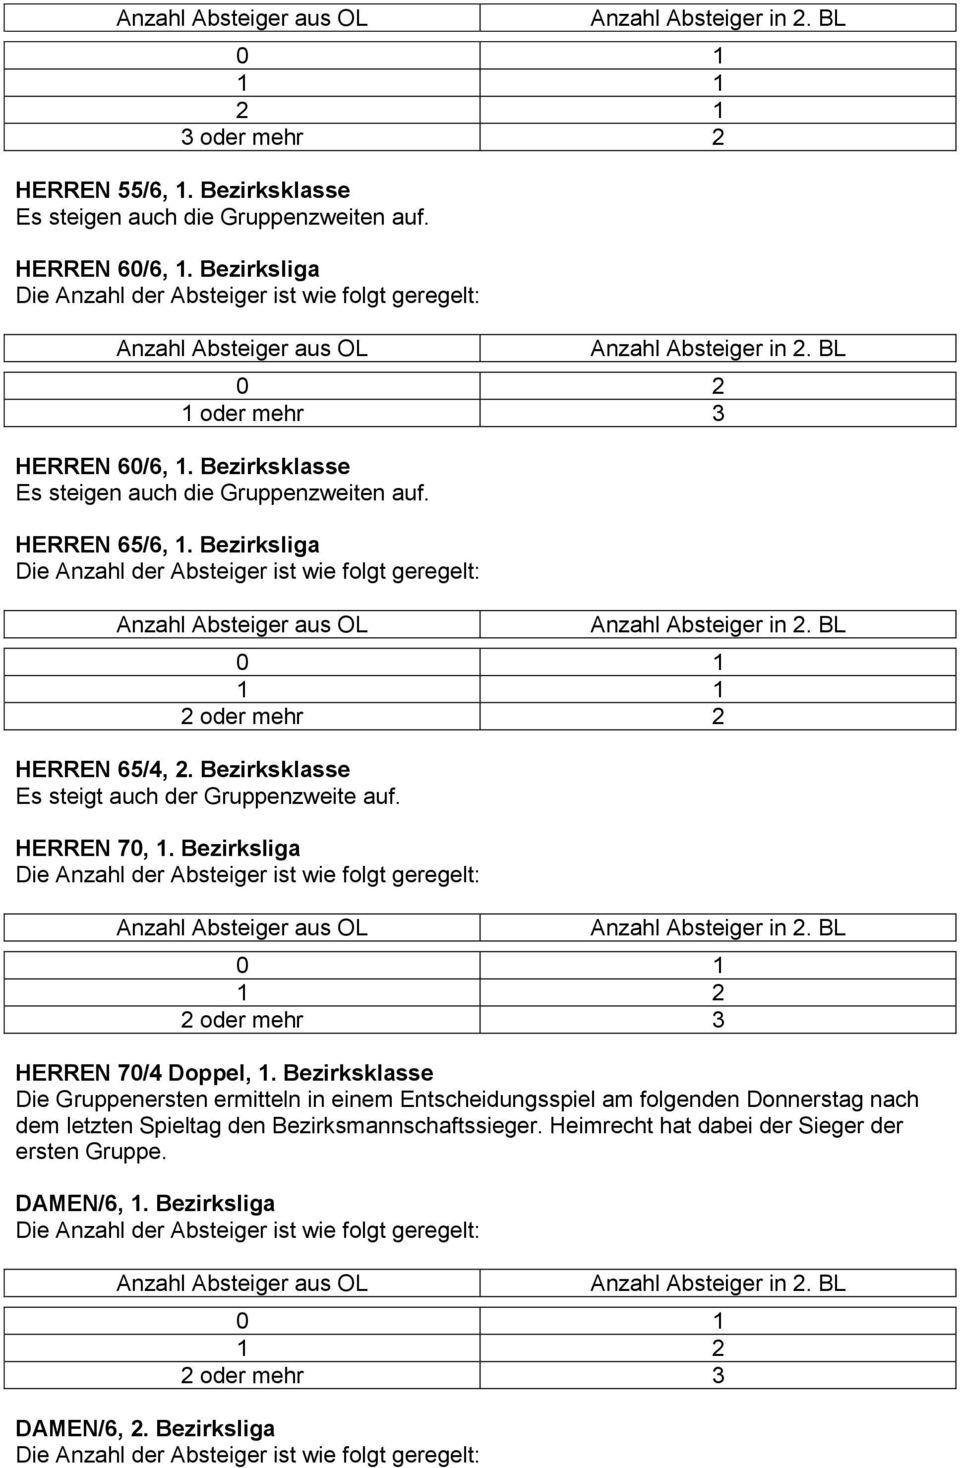 Bezirksklasse Es steigt auch der Gruppenzweite auf. HERREN 70, 1. Bezirksliga HERREN 70/4 Doppel, 1.